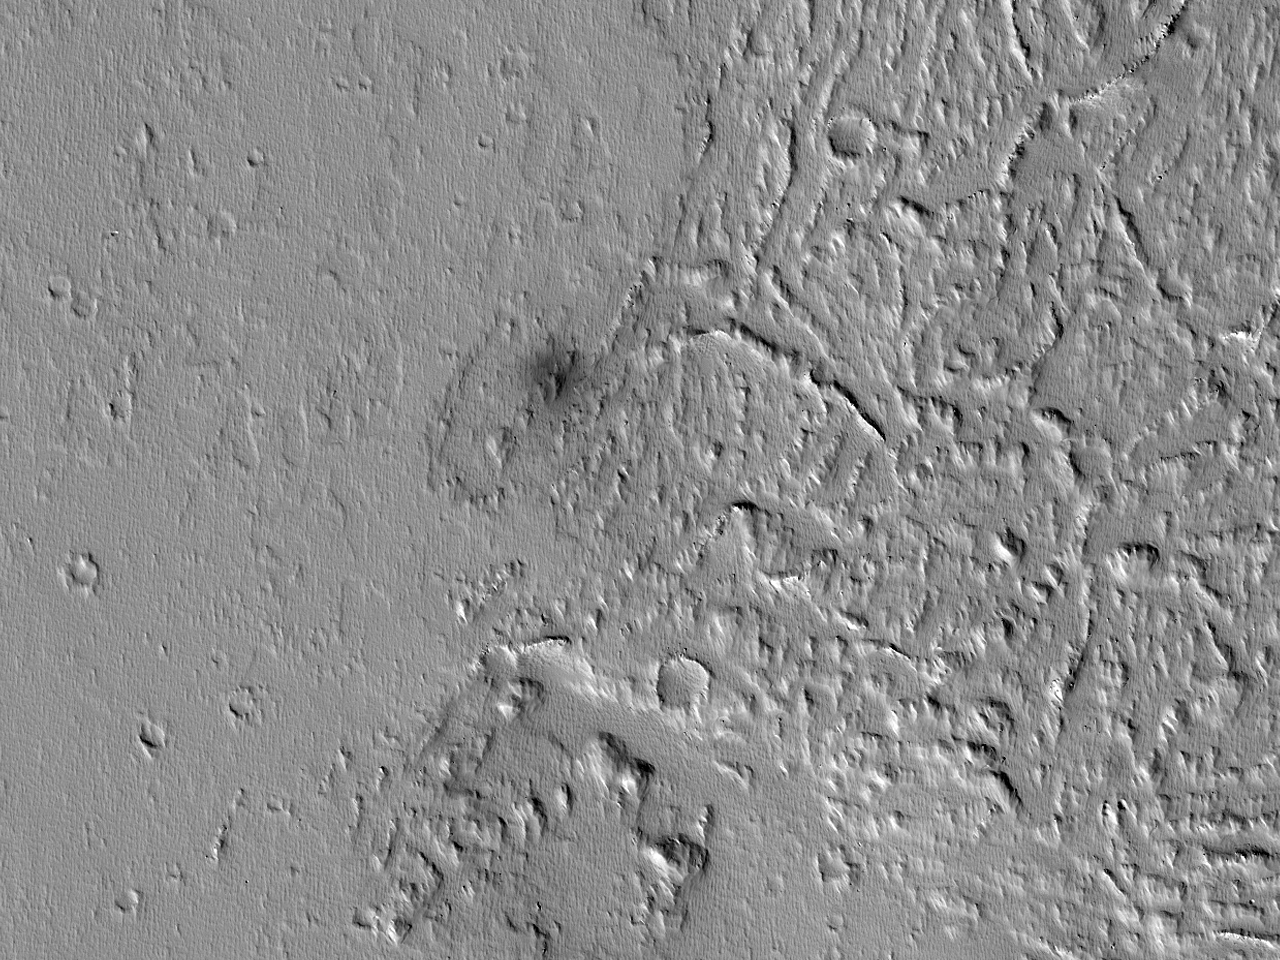 Recens ictu effectus crater inspectus